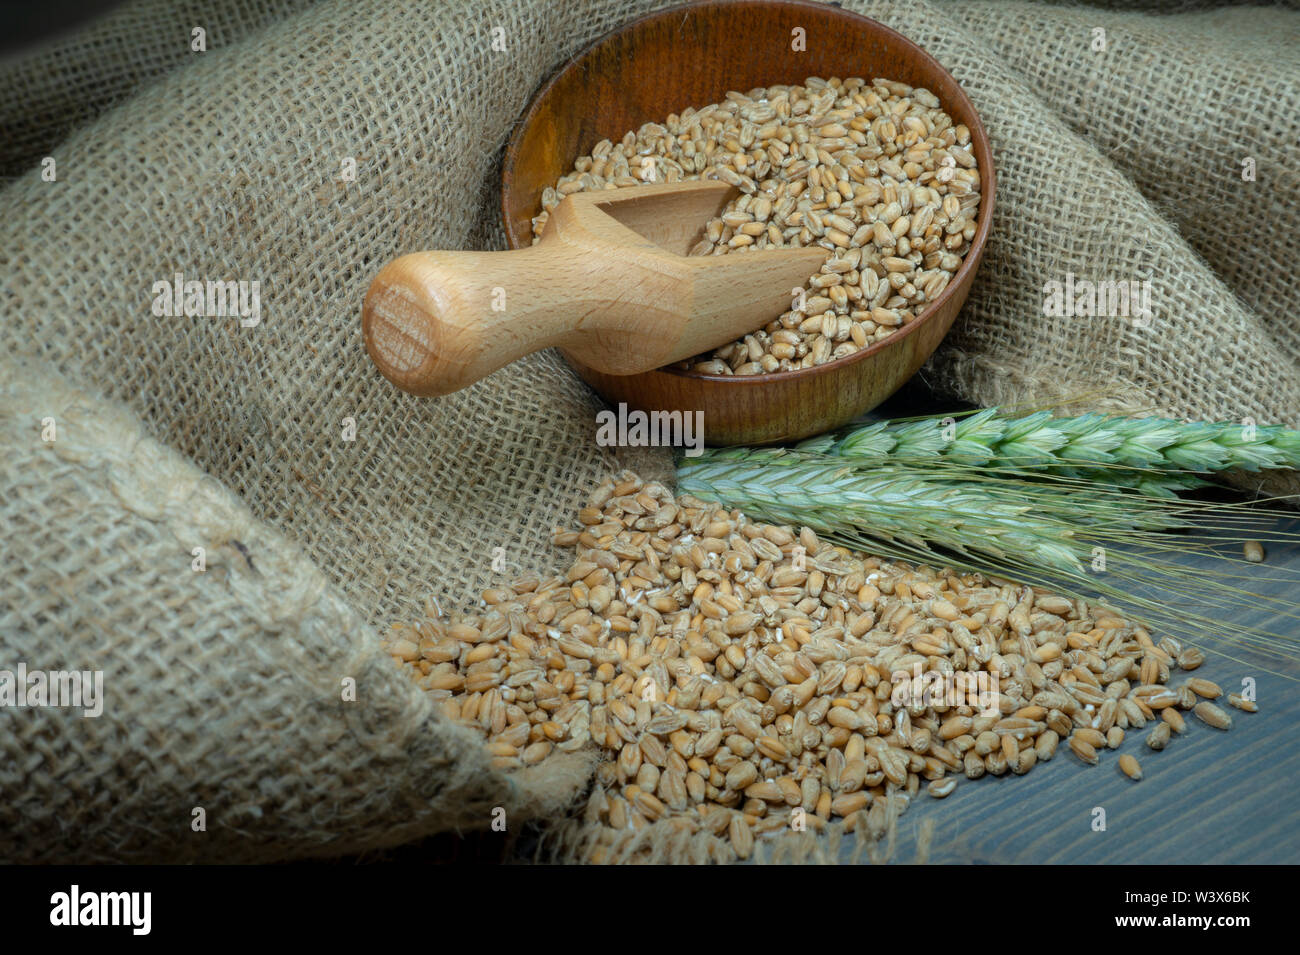 Les semences de blé de répandre à partir d'un bol en bois avec les oreilles ou vert et ripe blé d'or sur toile de jute dans une vue en gros des aliments de base et l'alimentation saine Banque D'Images